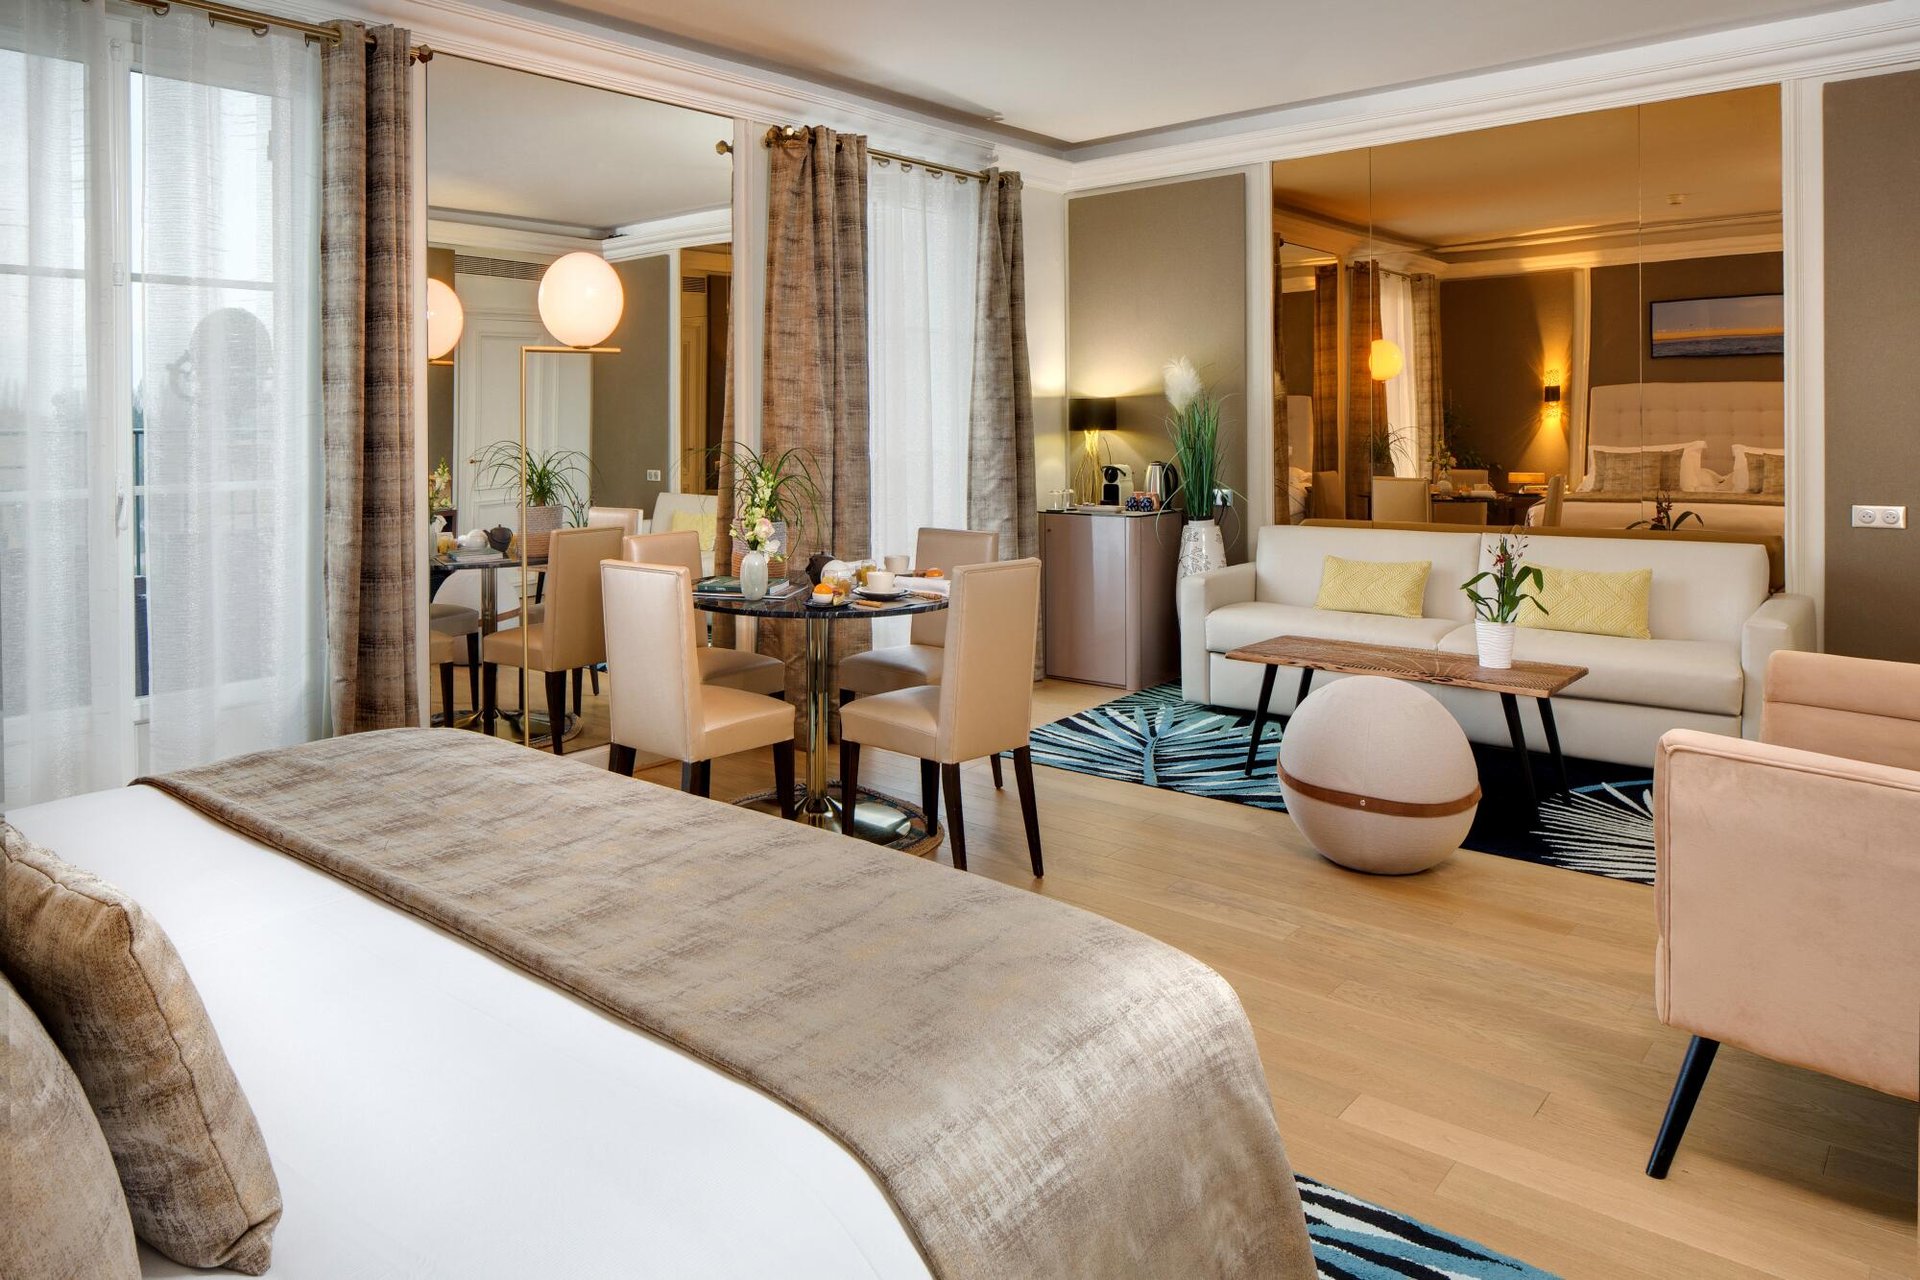 Design et confort de notre chambre Deluxe, hôtel de charme avec vue sur la rivière Yonne